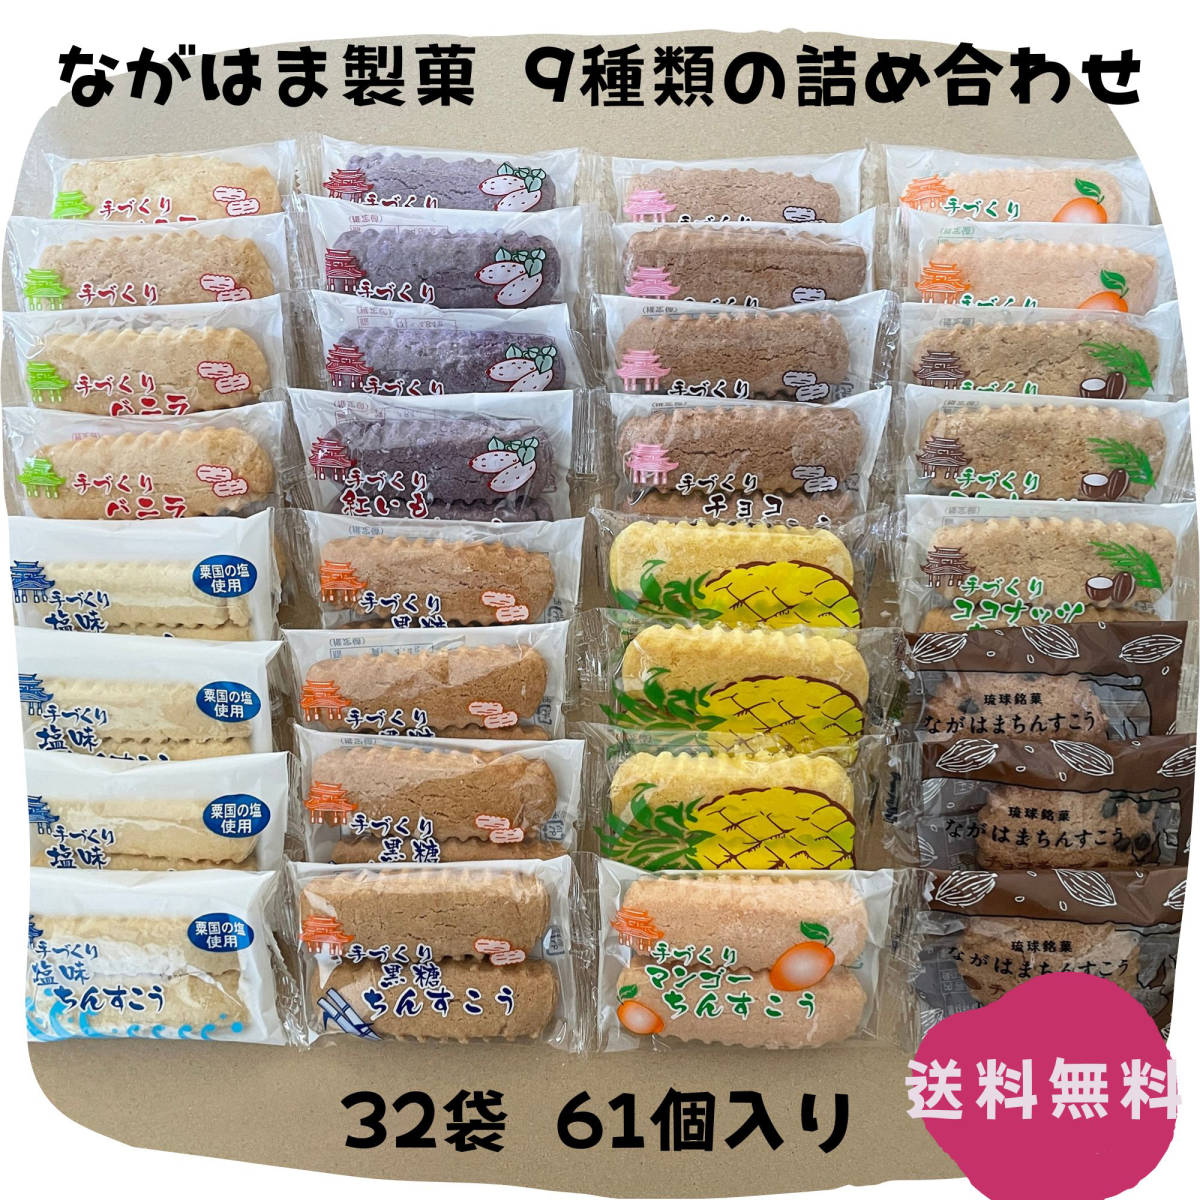 ちんすこう 9種類の詰め合わせA 32袋 61個 沖縄銘菓 ながはま製菓 お土産 お取り寄せ JChere雅虎拍卖代购